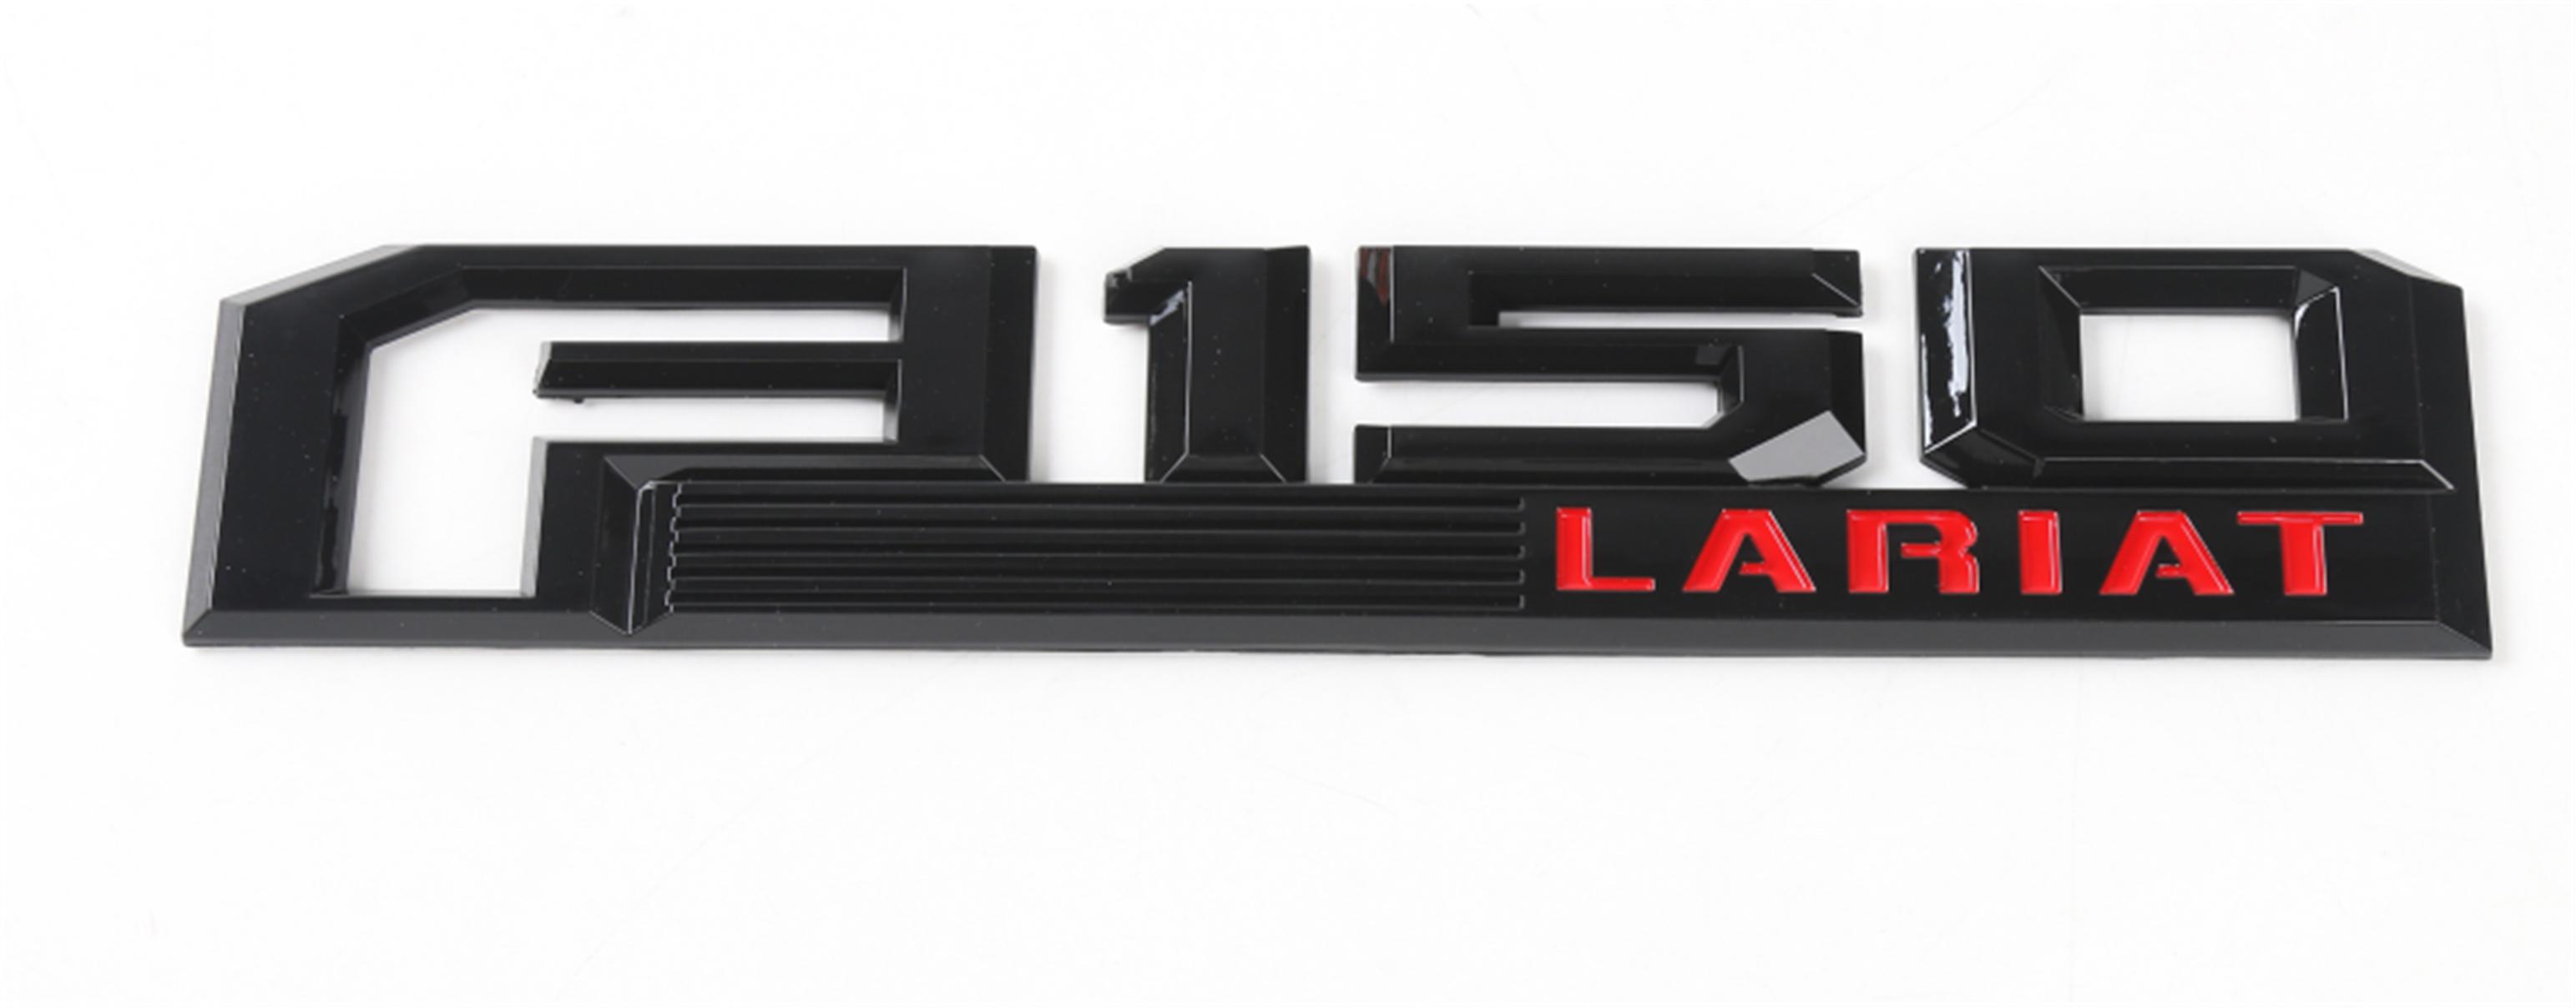 Изображение товара: Багажник гоночный Литье отделка эмблема значок наклейка Наклейка ABS для Ford F150 стильные автомобильные аксессуары наружное украшение совершенно новый